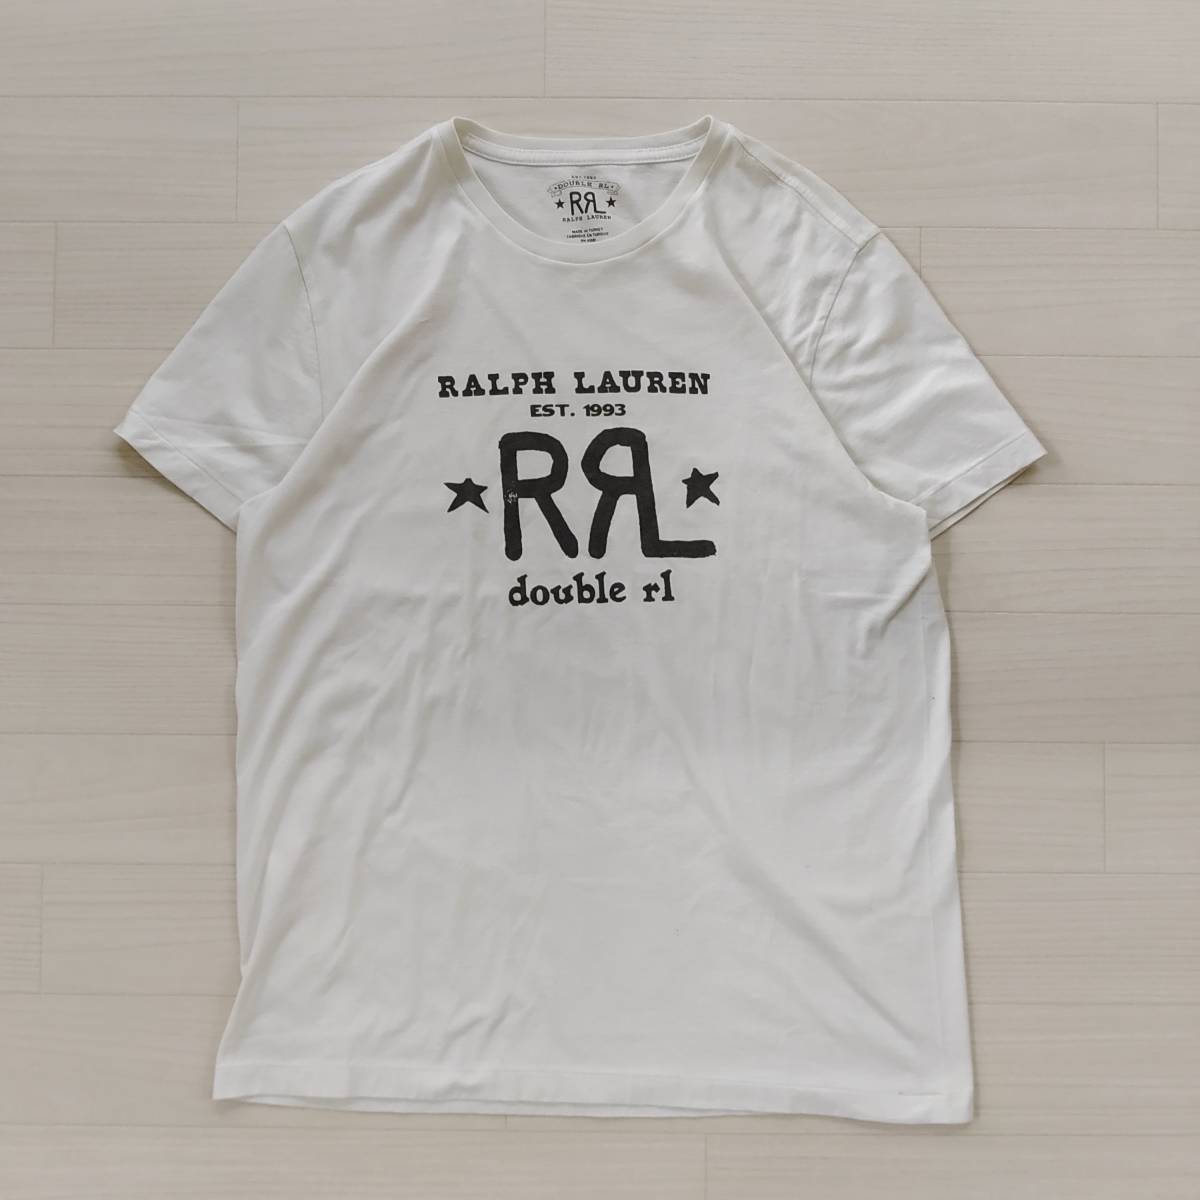 ヤフオク! -「ダブルアールエル rrl tシャツ s」(RRL)の中古品・新品 